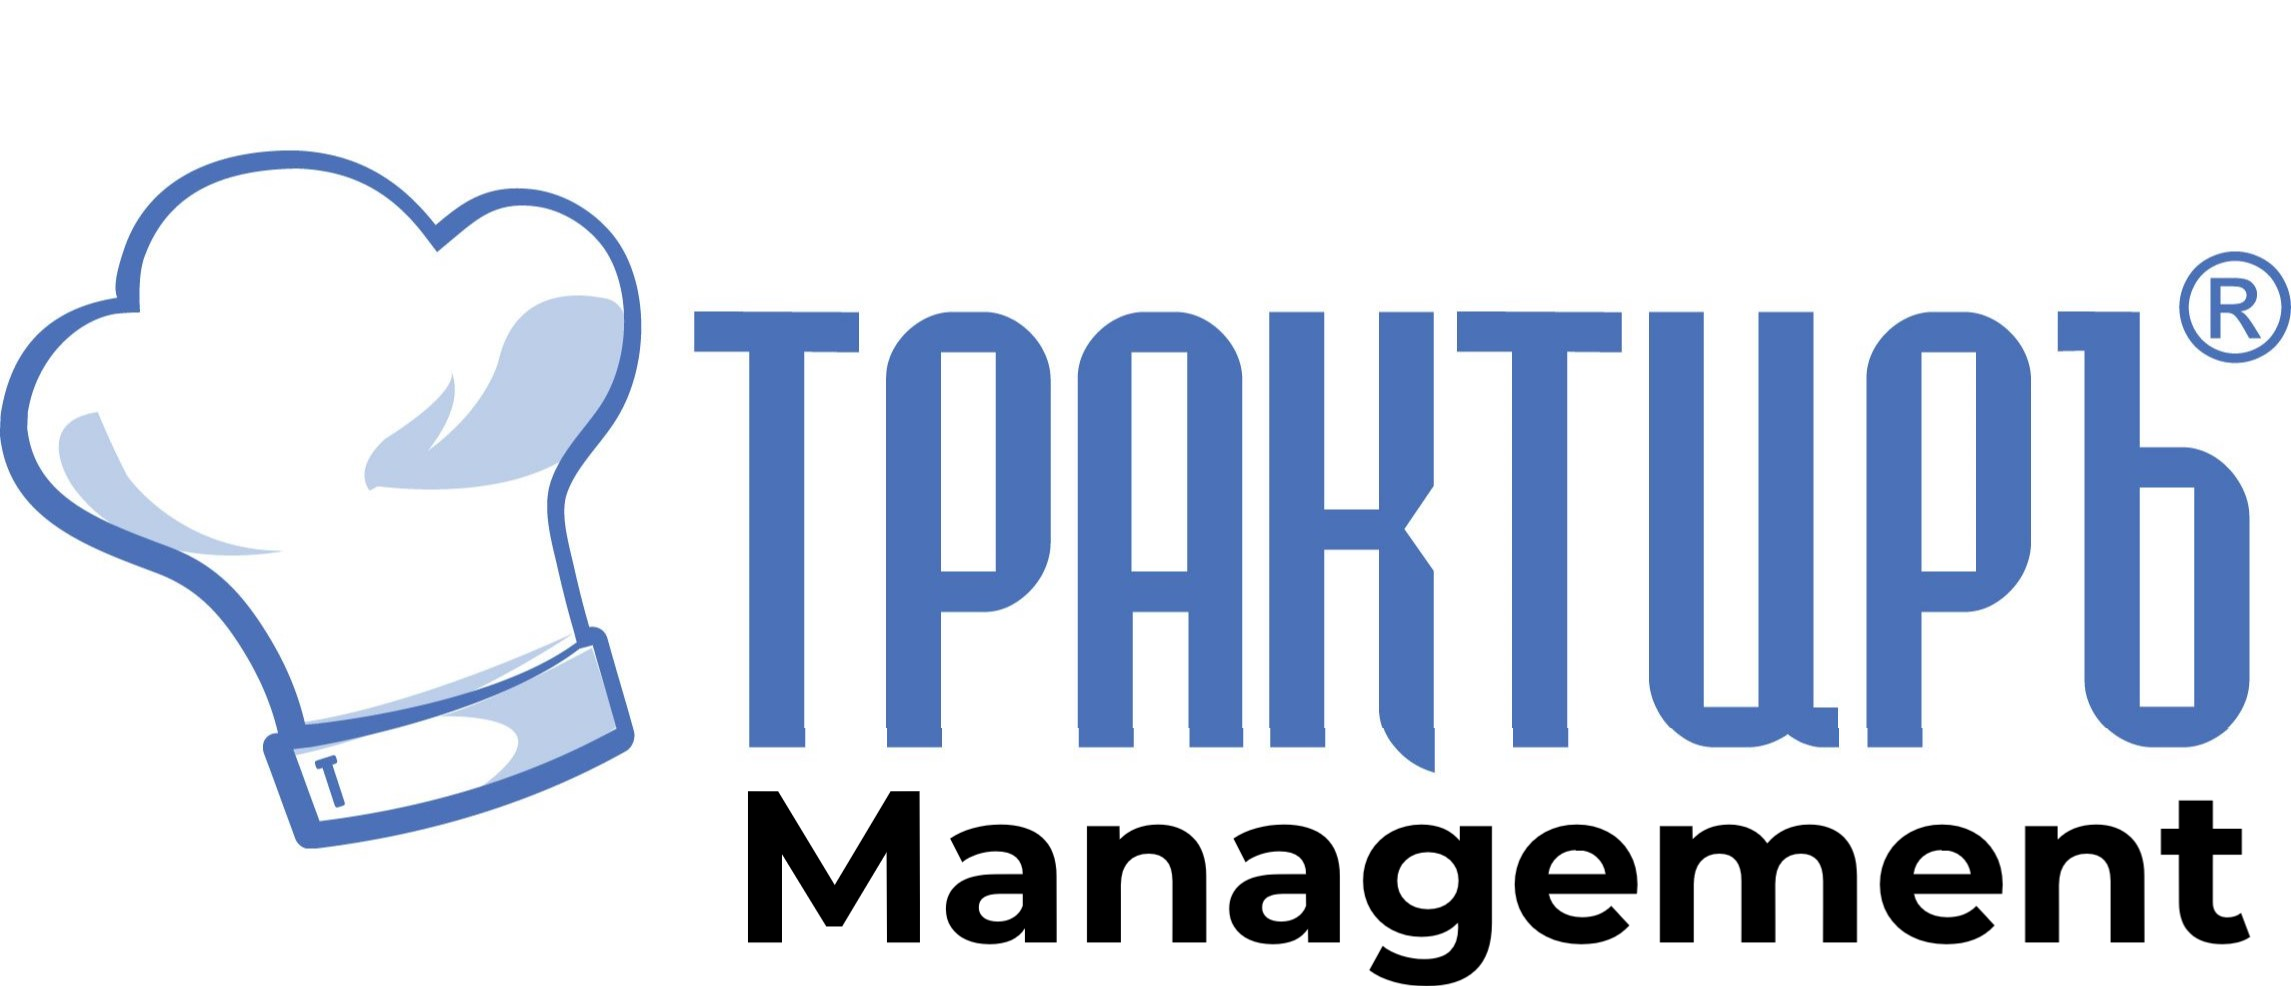 Трактиръ: Management в Нижнем Тагиле